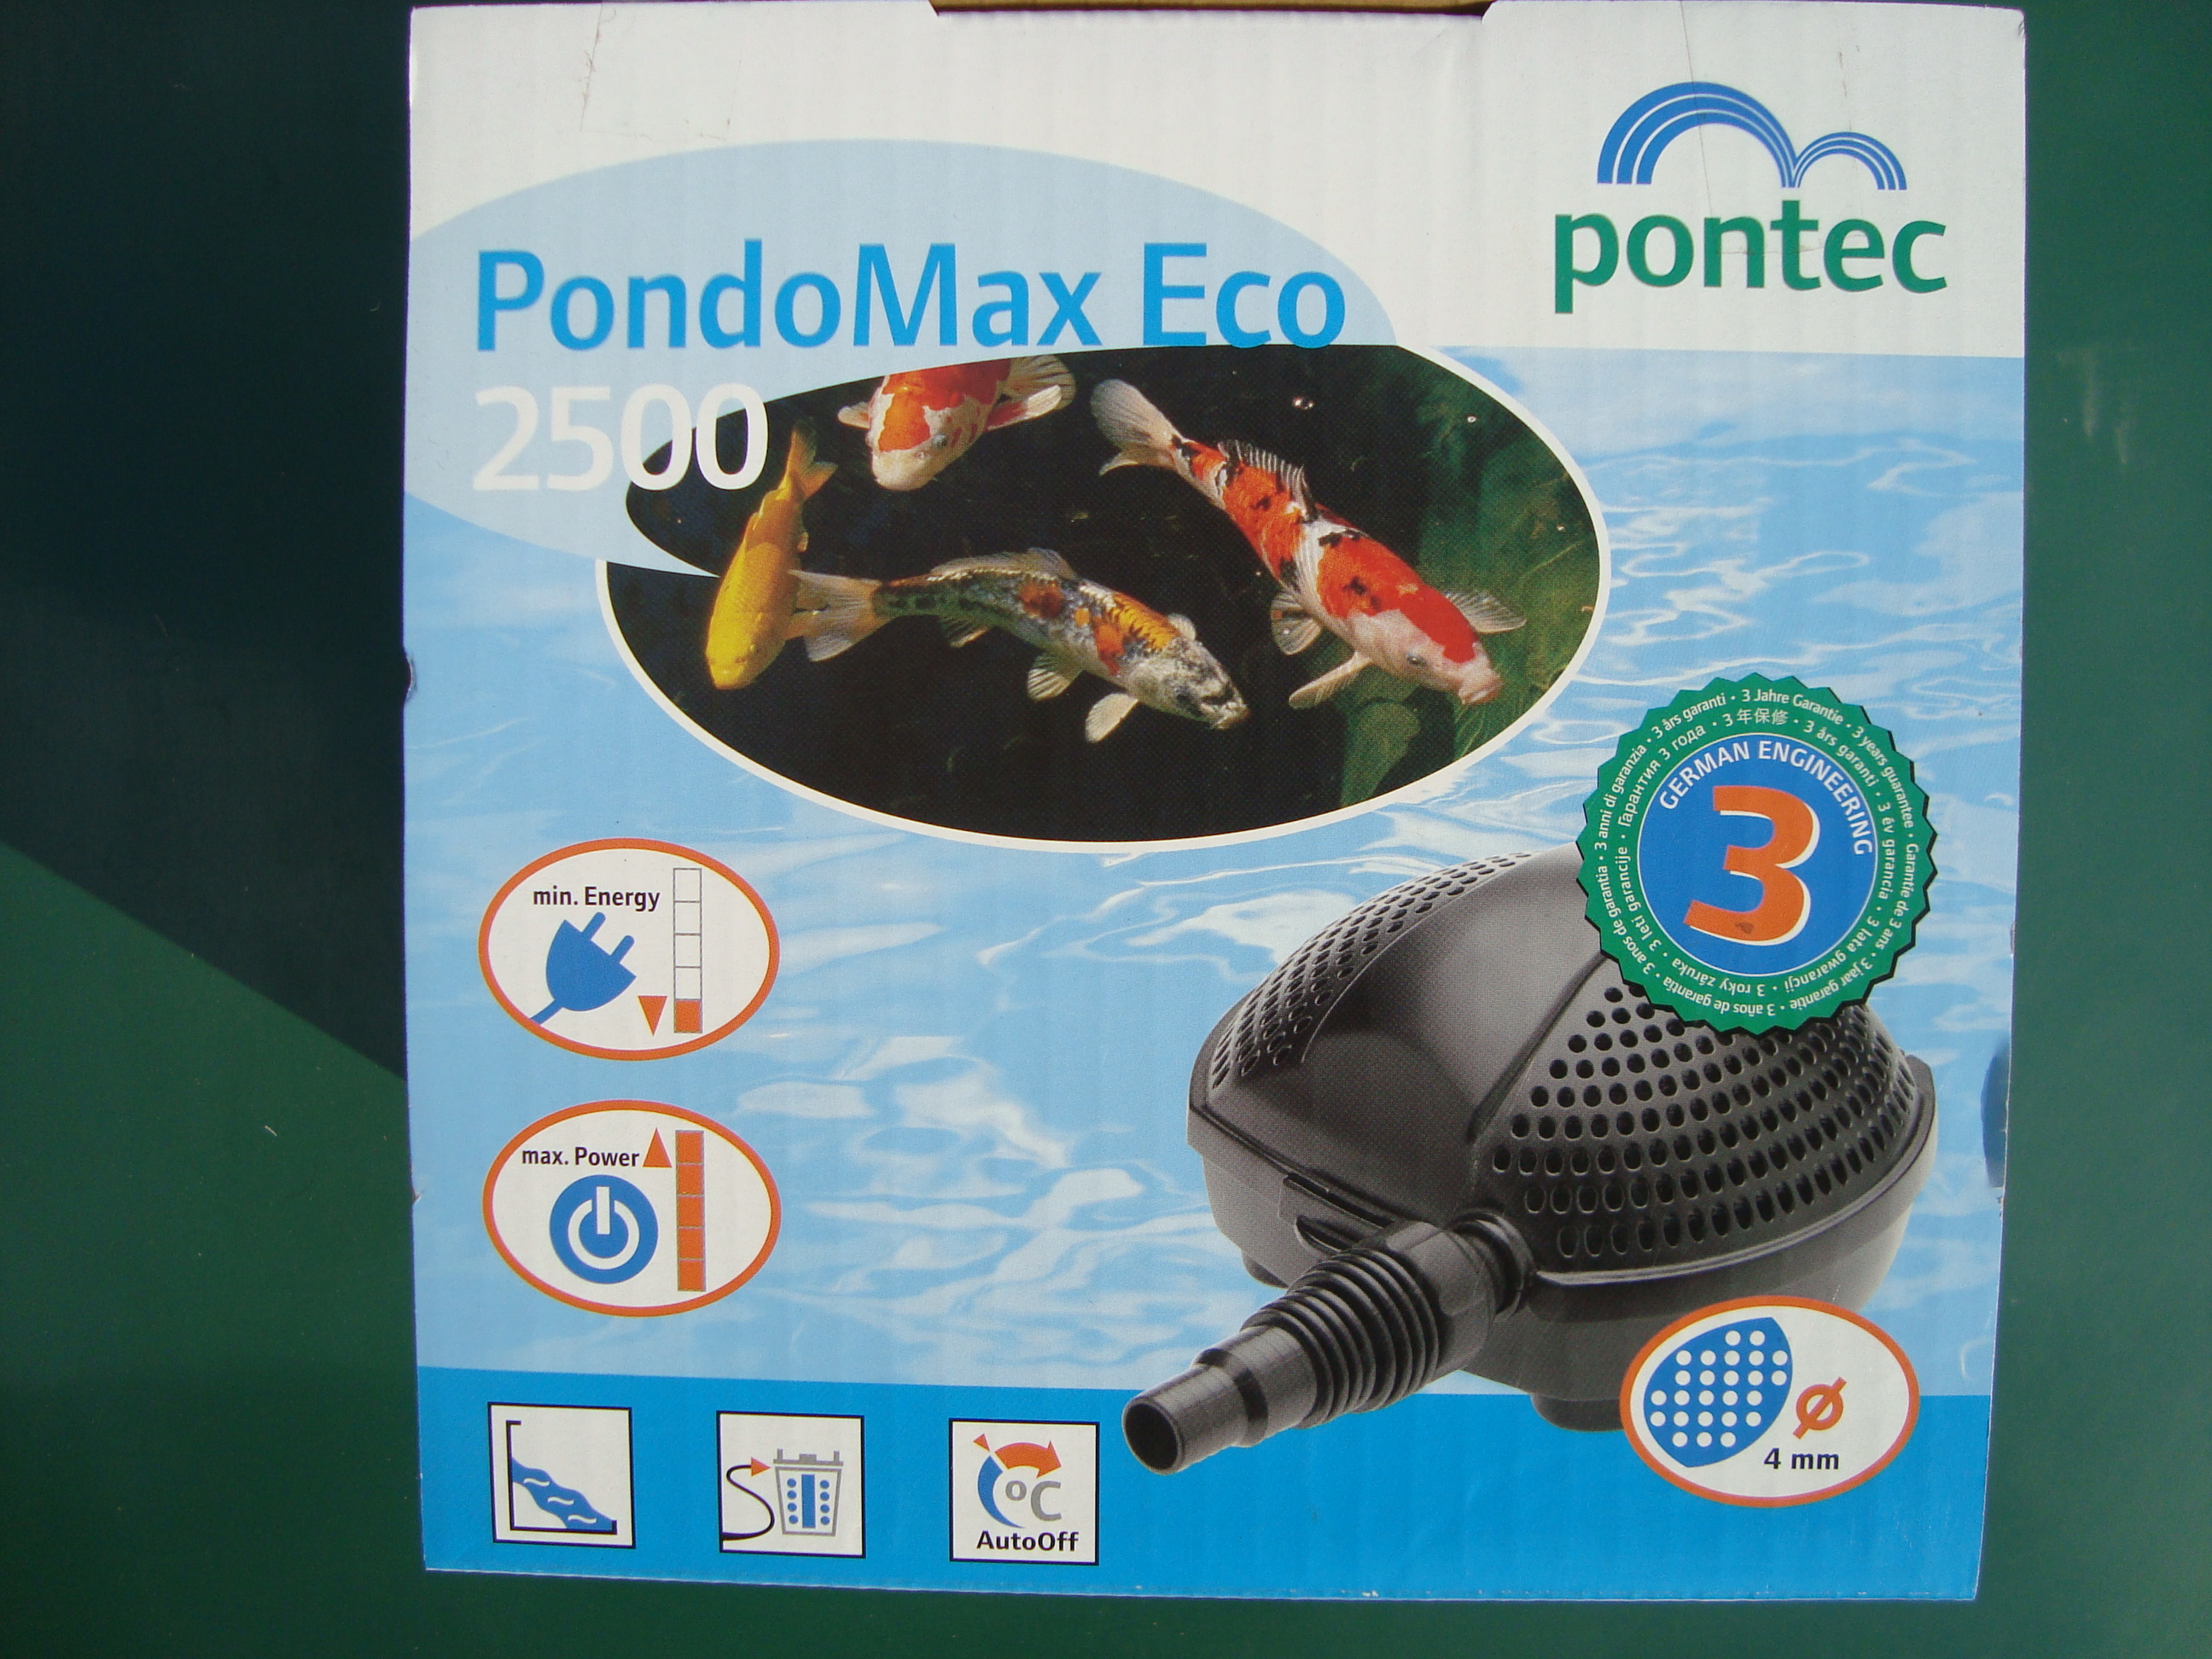 Jazierkové č. Pontec Pondomax Eco 2500 cena 72€